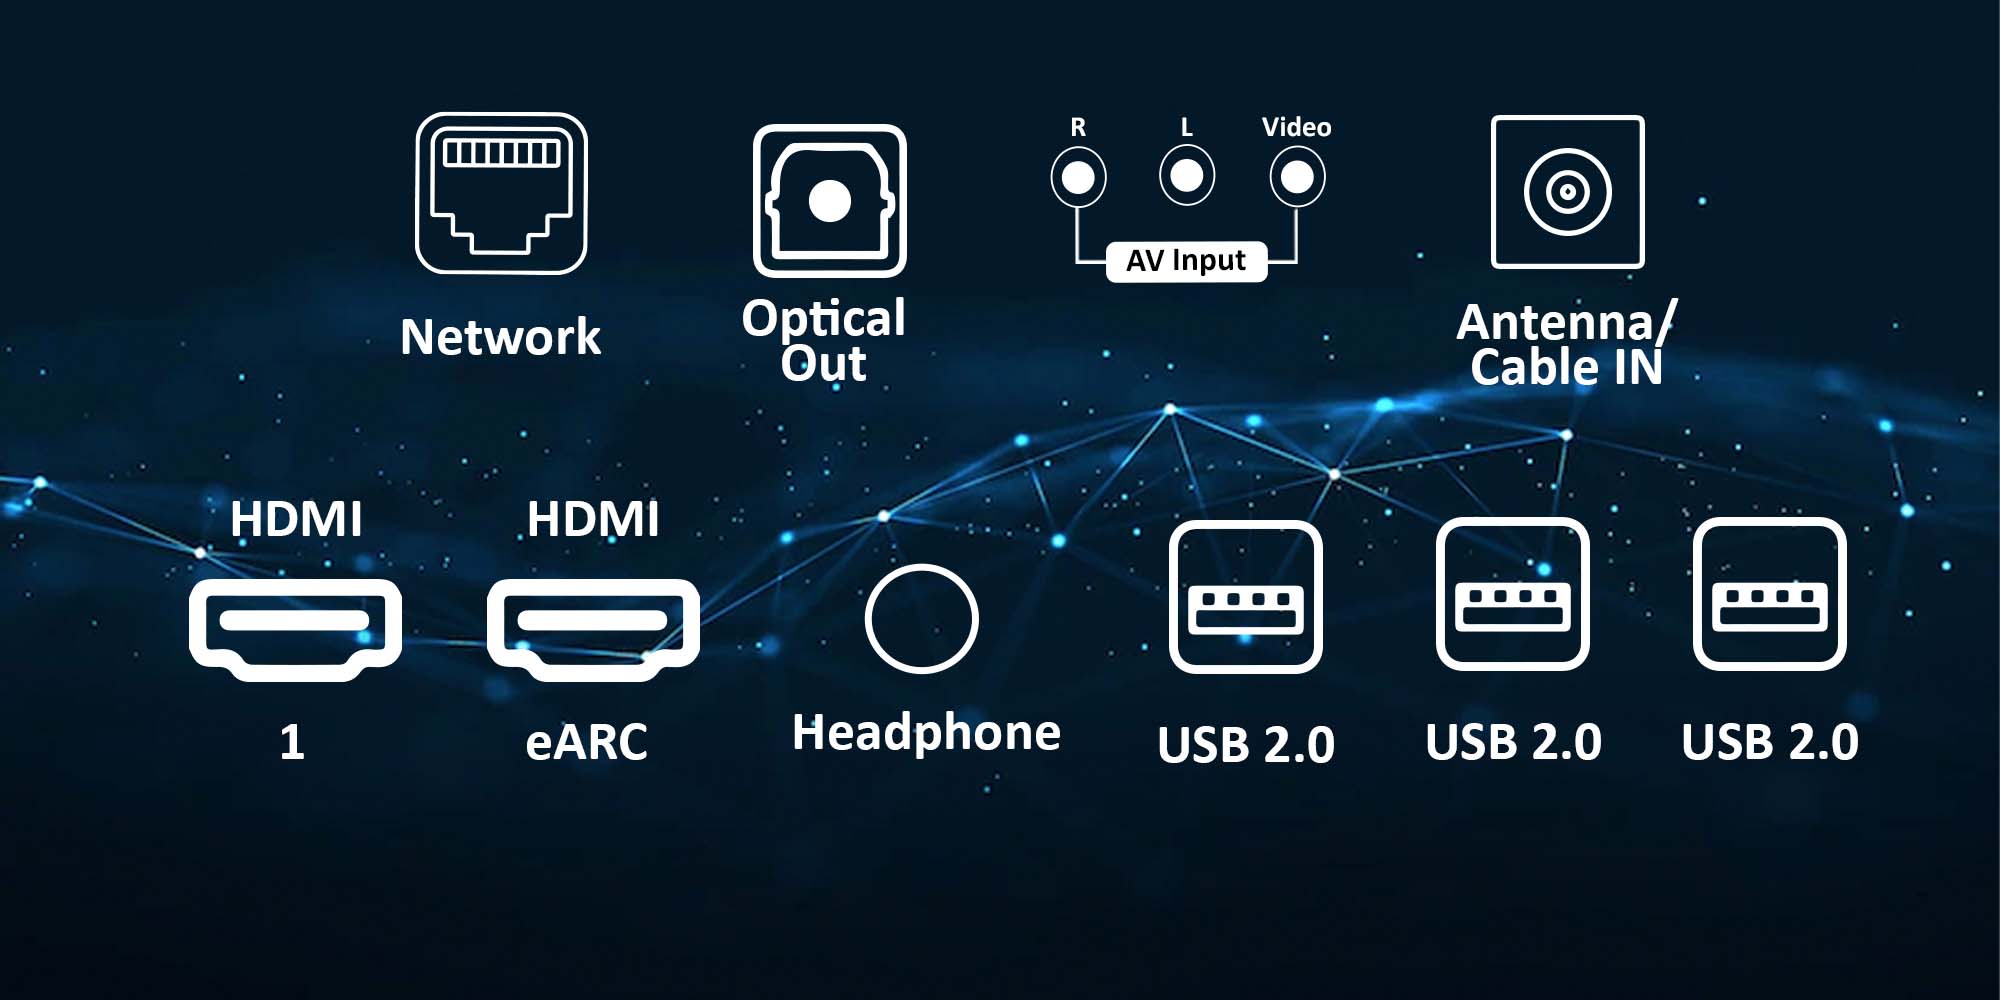 Nikai UHD60SLEDT2 | 58” 4K UHD Android Smart LED